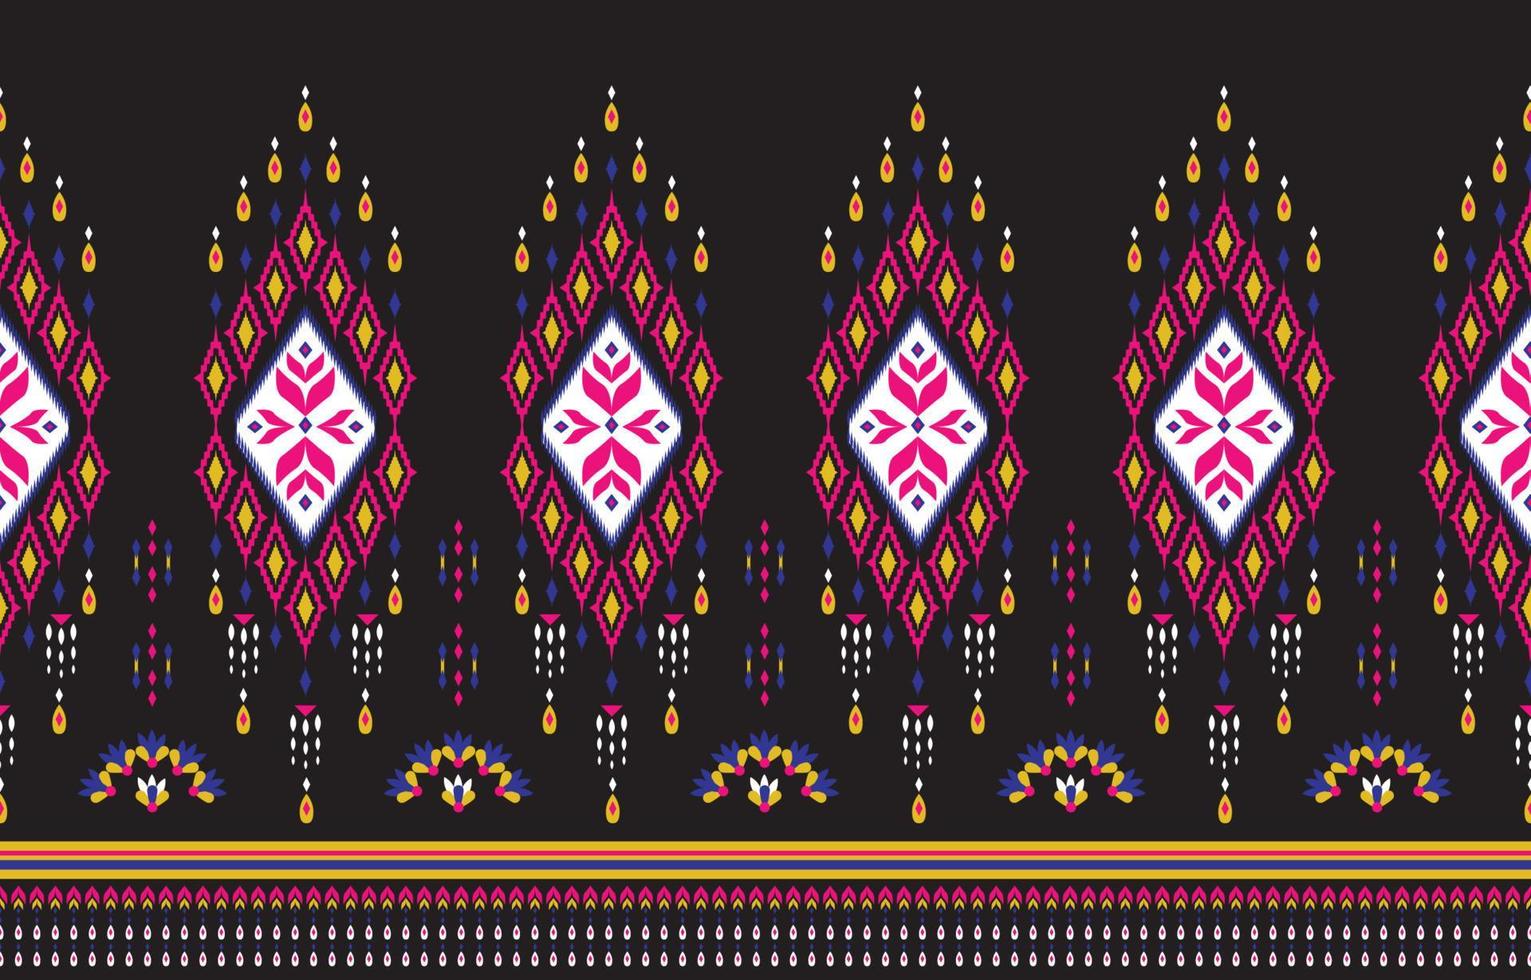 bella arte astratta etnica. modello senza cuciture ikat in ricamo tribale, popolare, stile messicano. stampa di ornamenti d'arte geometrica azteca. design per moquette, carta da parati, abbigliamento, avvolgimento, tessuto. vettore